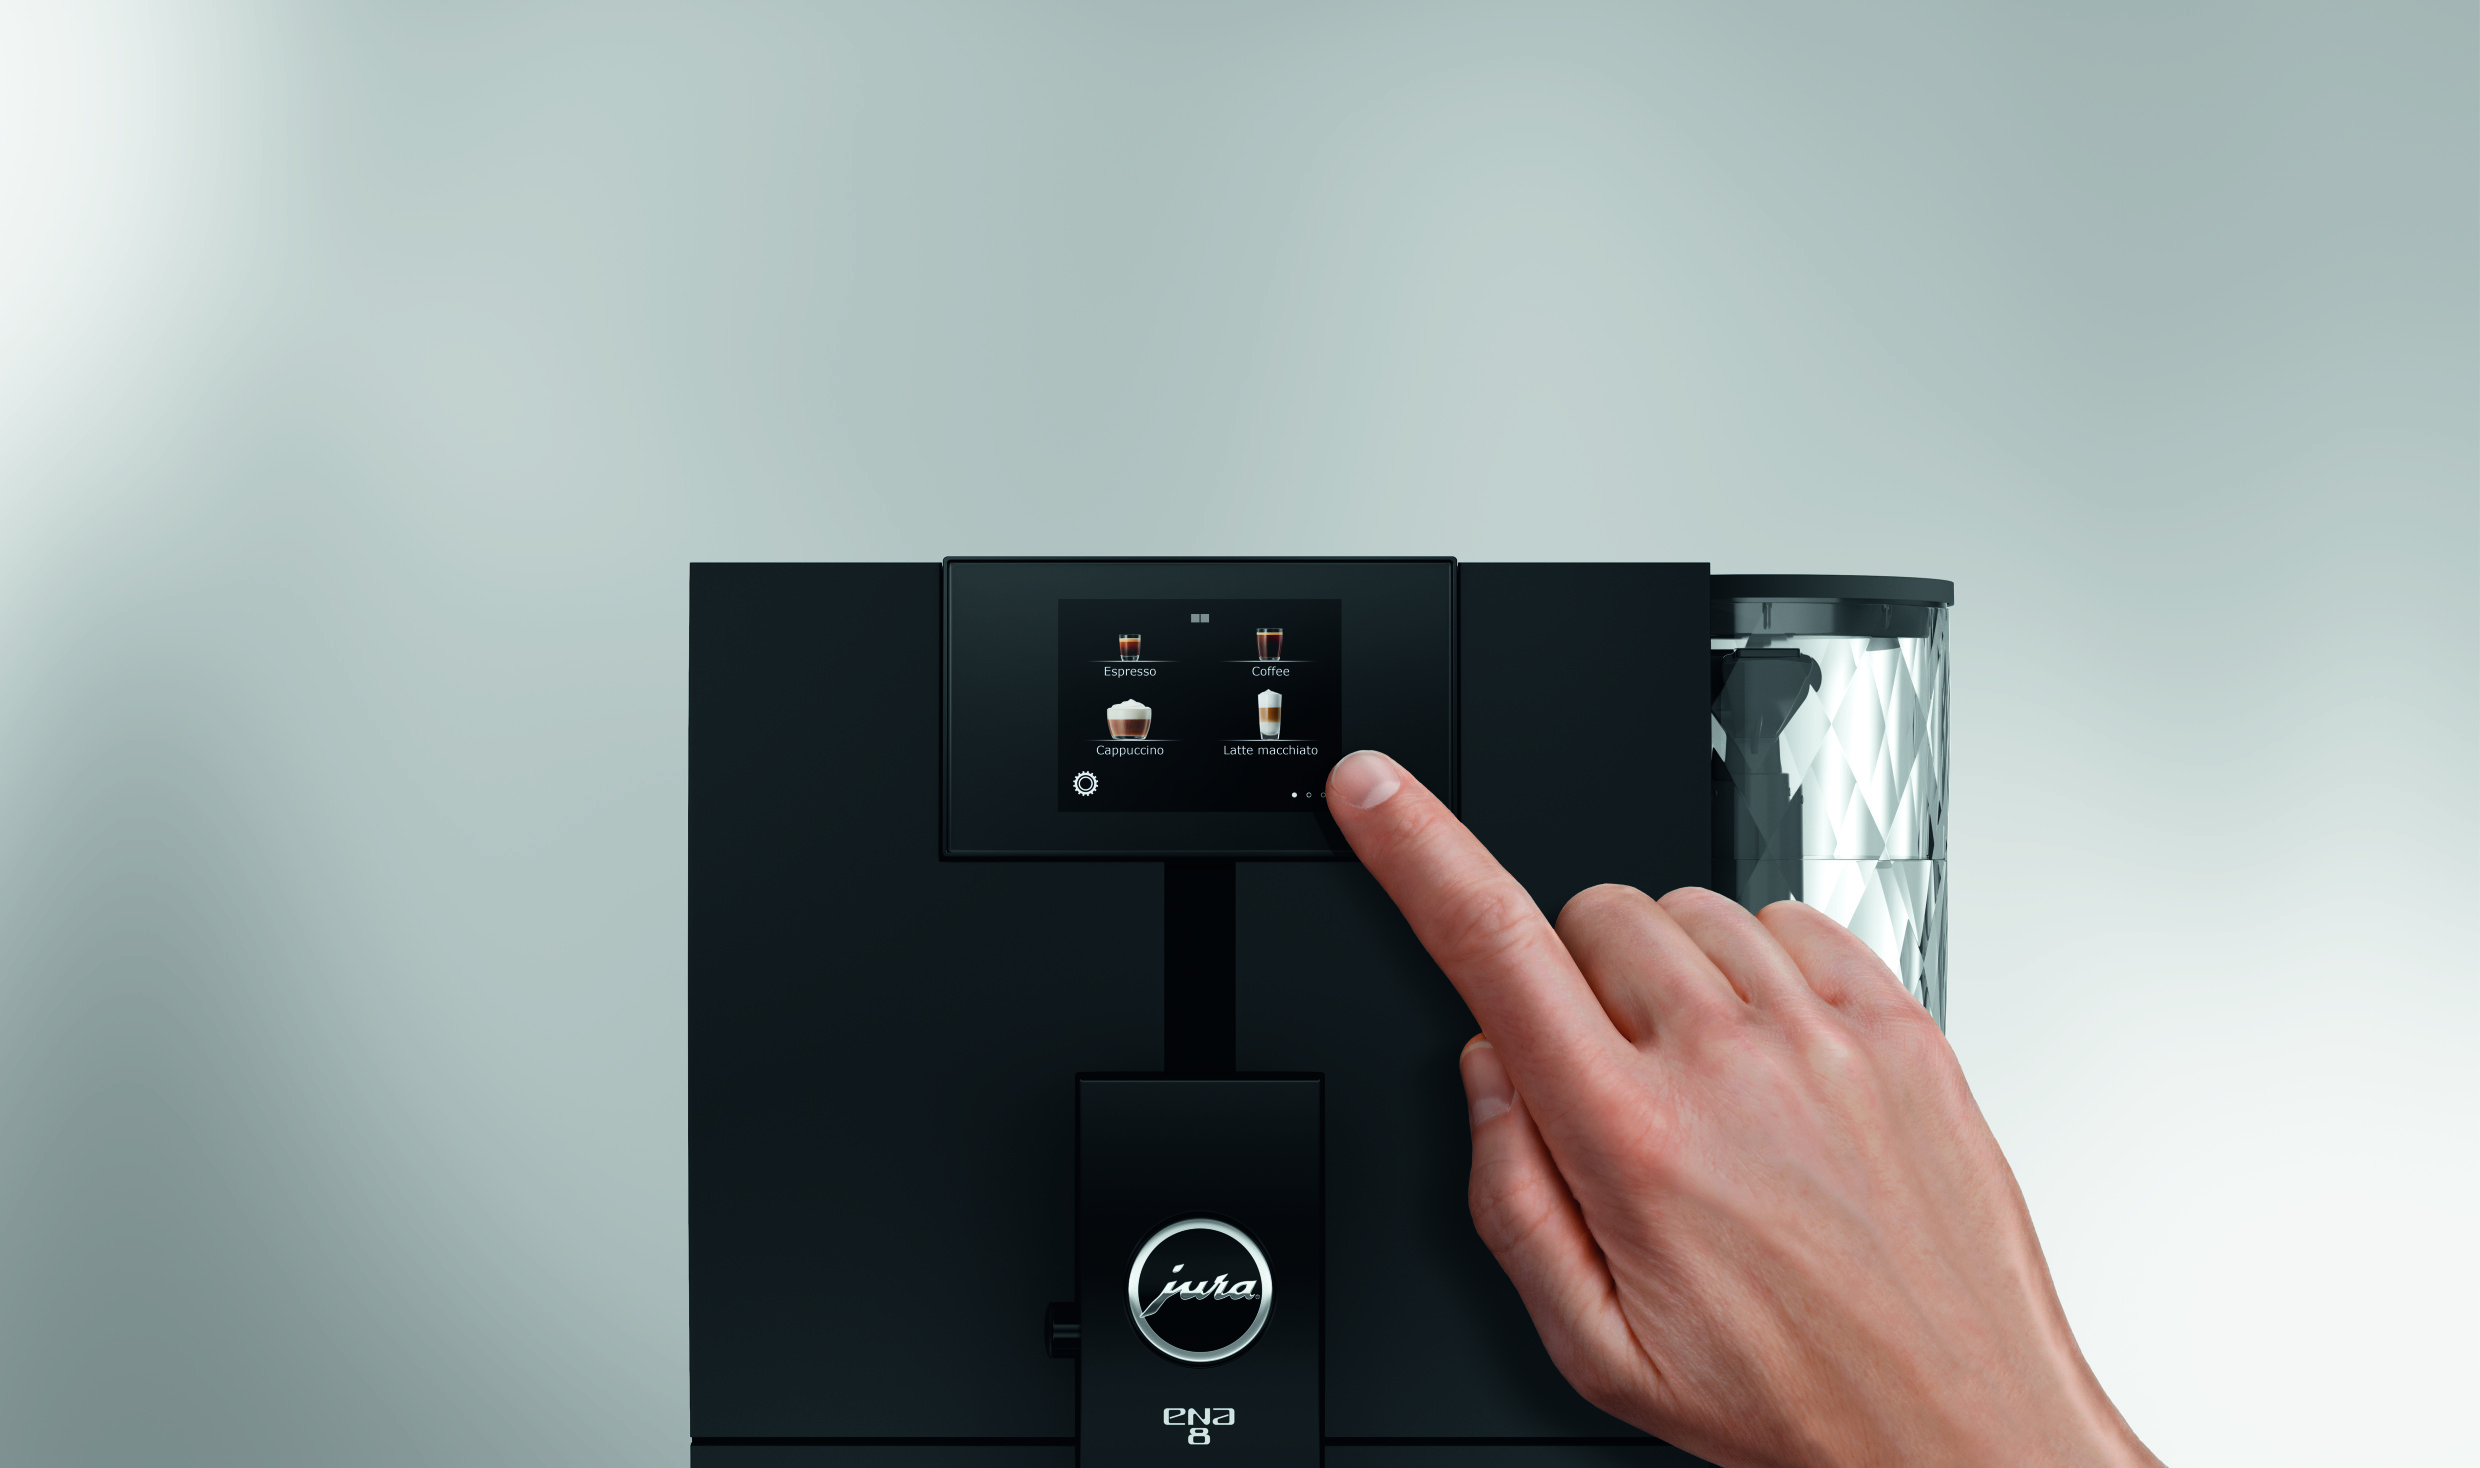 Jura gör exklusiva kaffemaskiner. Det här är en kompakt exklusiv kaffemaskin till bra pris.